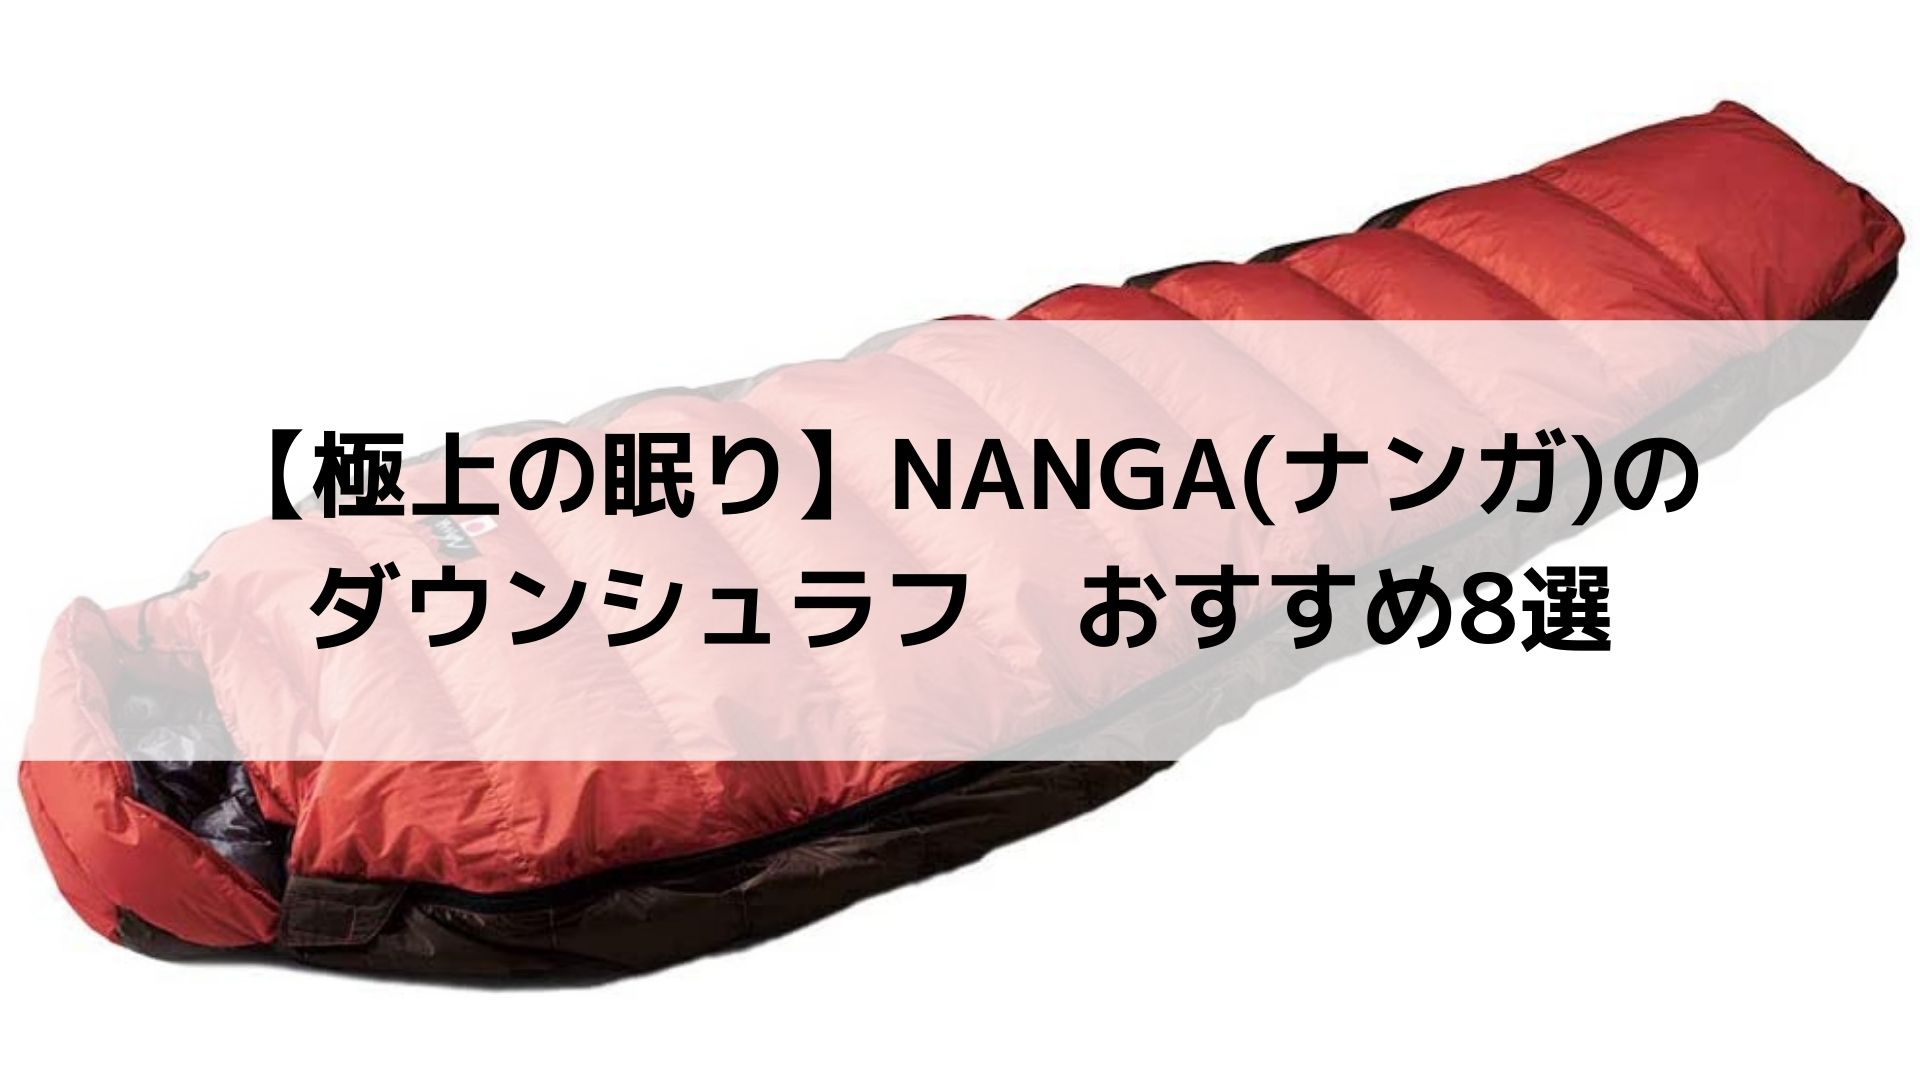 NANGA(ナンガ)のダウンシュラフおすすめ8選【極上の寝袋】 - Campify 